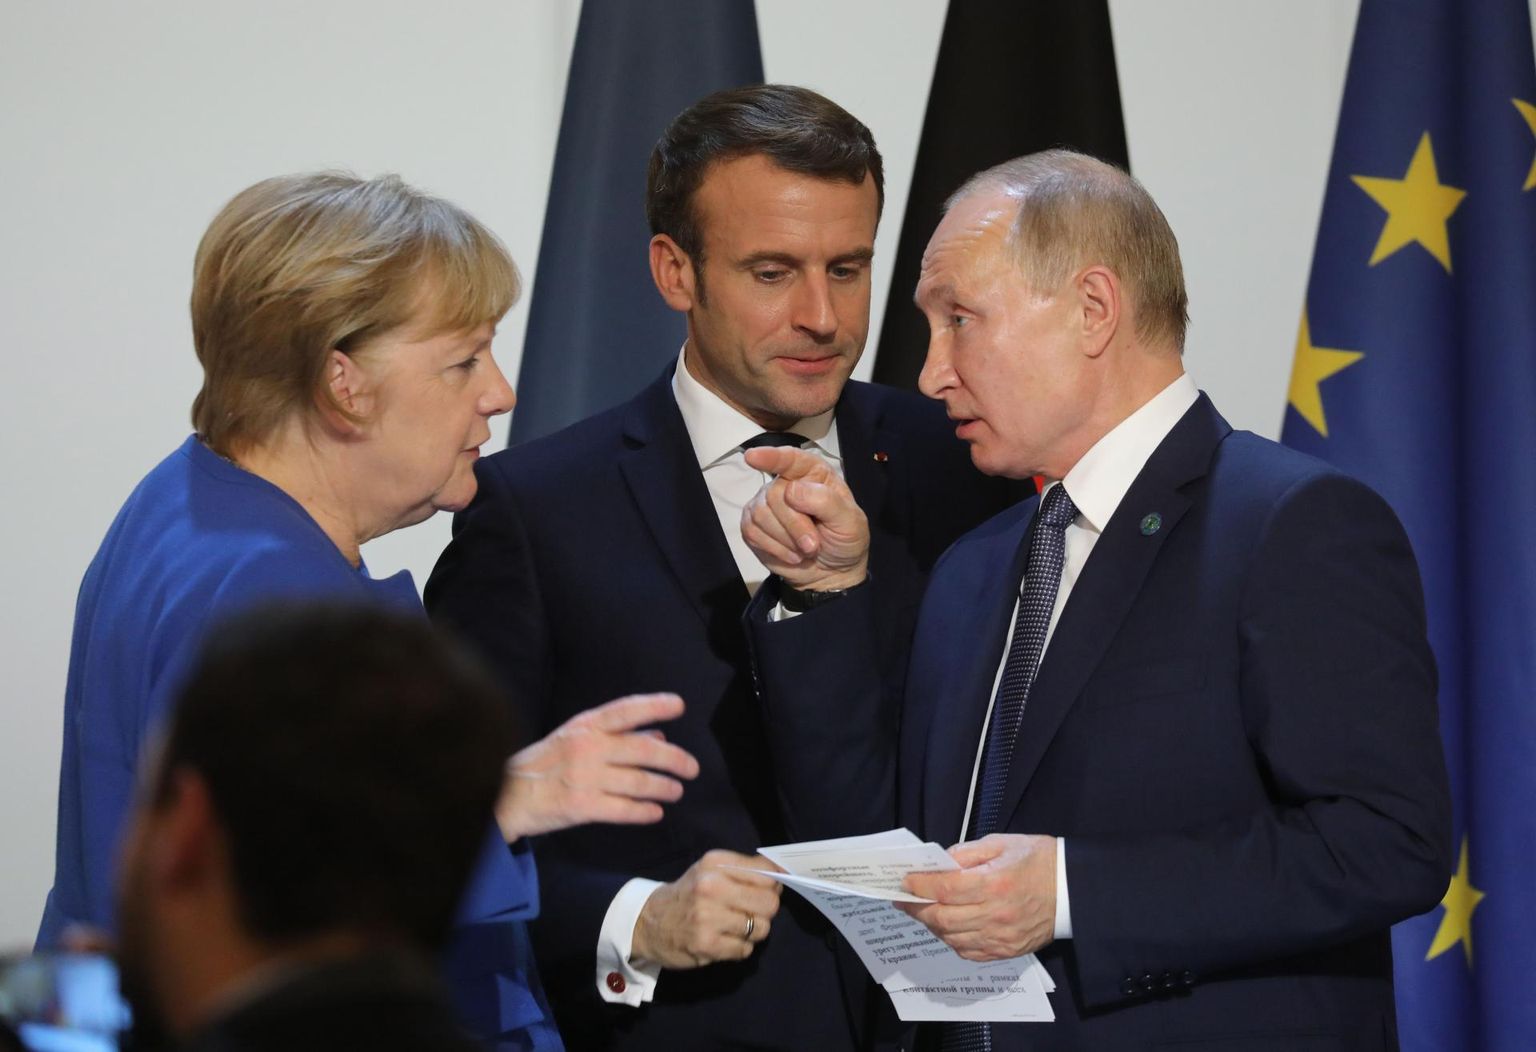 Saksamaa kantsler Angela Merkel (vasakult), Prantsusmaa president Emmanuel Macron ja Venemaa riigipea Vladimir Putin detsembri alguses Pariisis Ukraina konflikti teemal peetud kohtumisel.